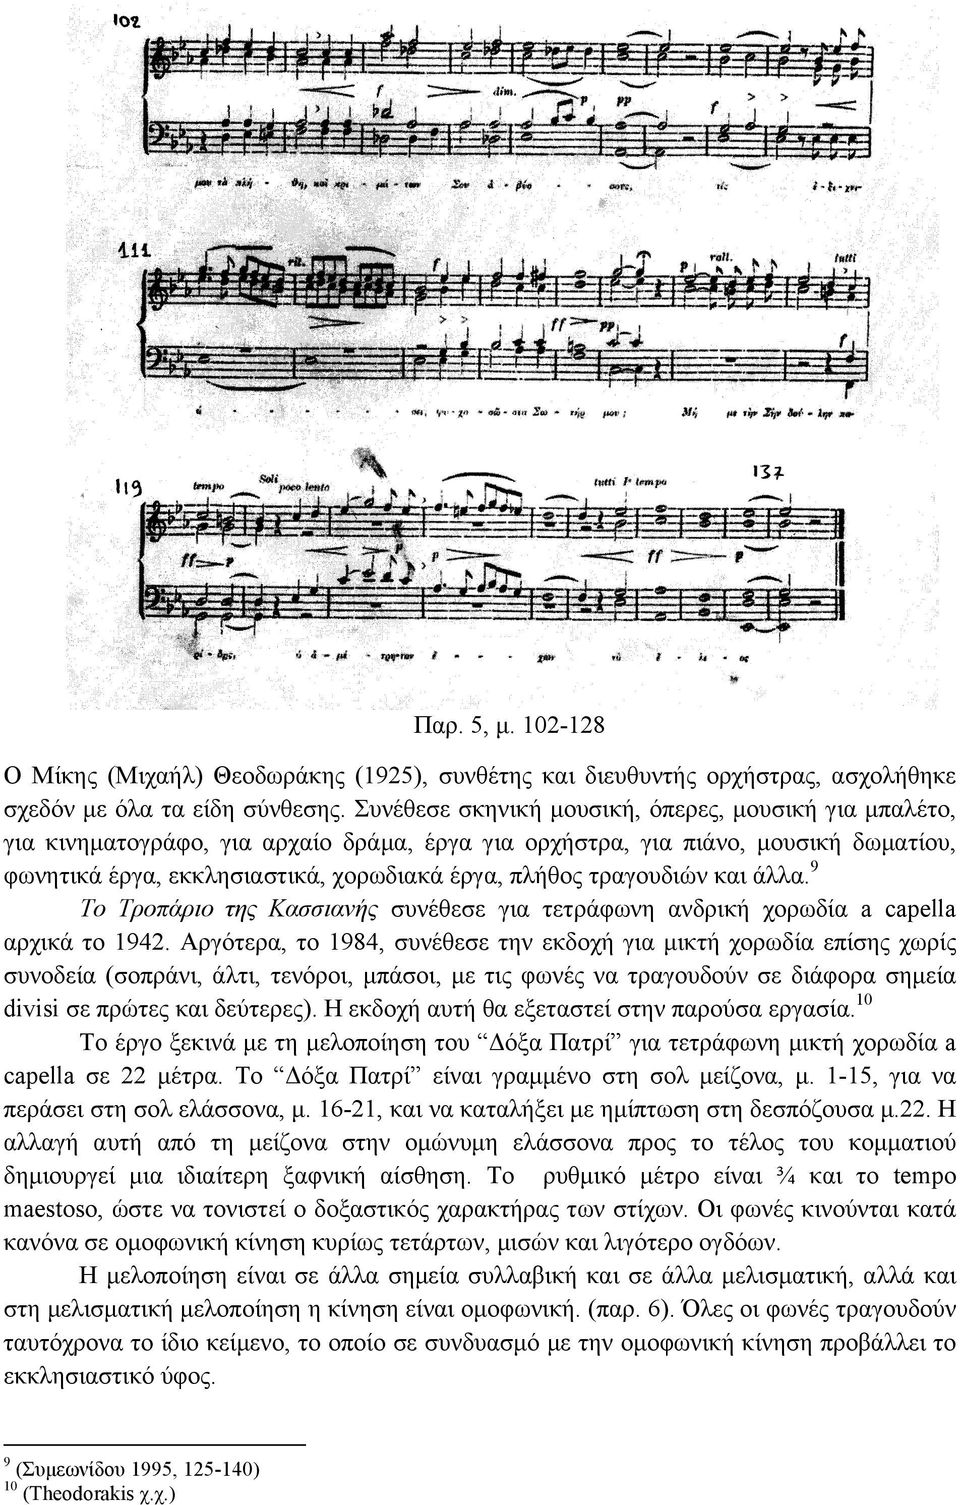 τραγουδιών και άλλα. 9 Το Τροπάριο της Κασσιανής συνέθεσε για τετράφωνη ανδρική χορωδία a capella αρχικά το 1942.